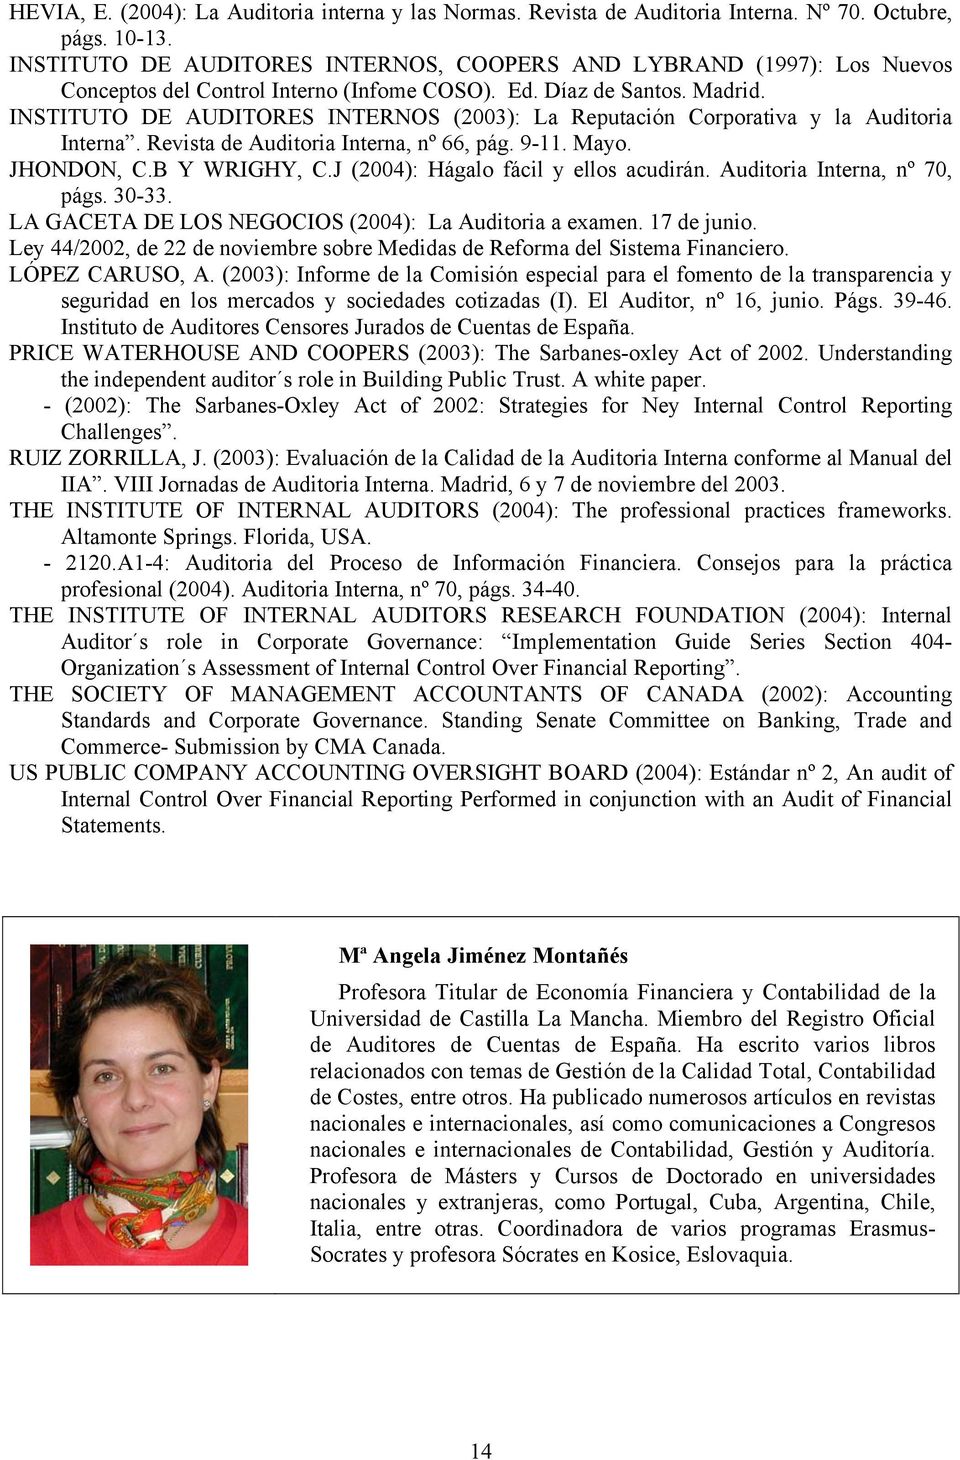 INSTITUTO DE AUDITORES INTERNOS (2003): La Reputación Corporativa y la Auditoria Interna. Revista de Auditoria Interna, nº 66, pág. 9-11. Mayo. JHONDON, C.B Y WRIGHY, C.